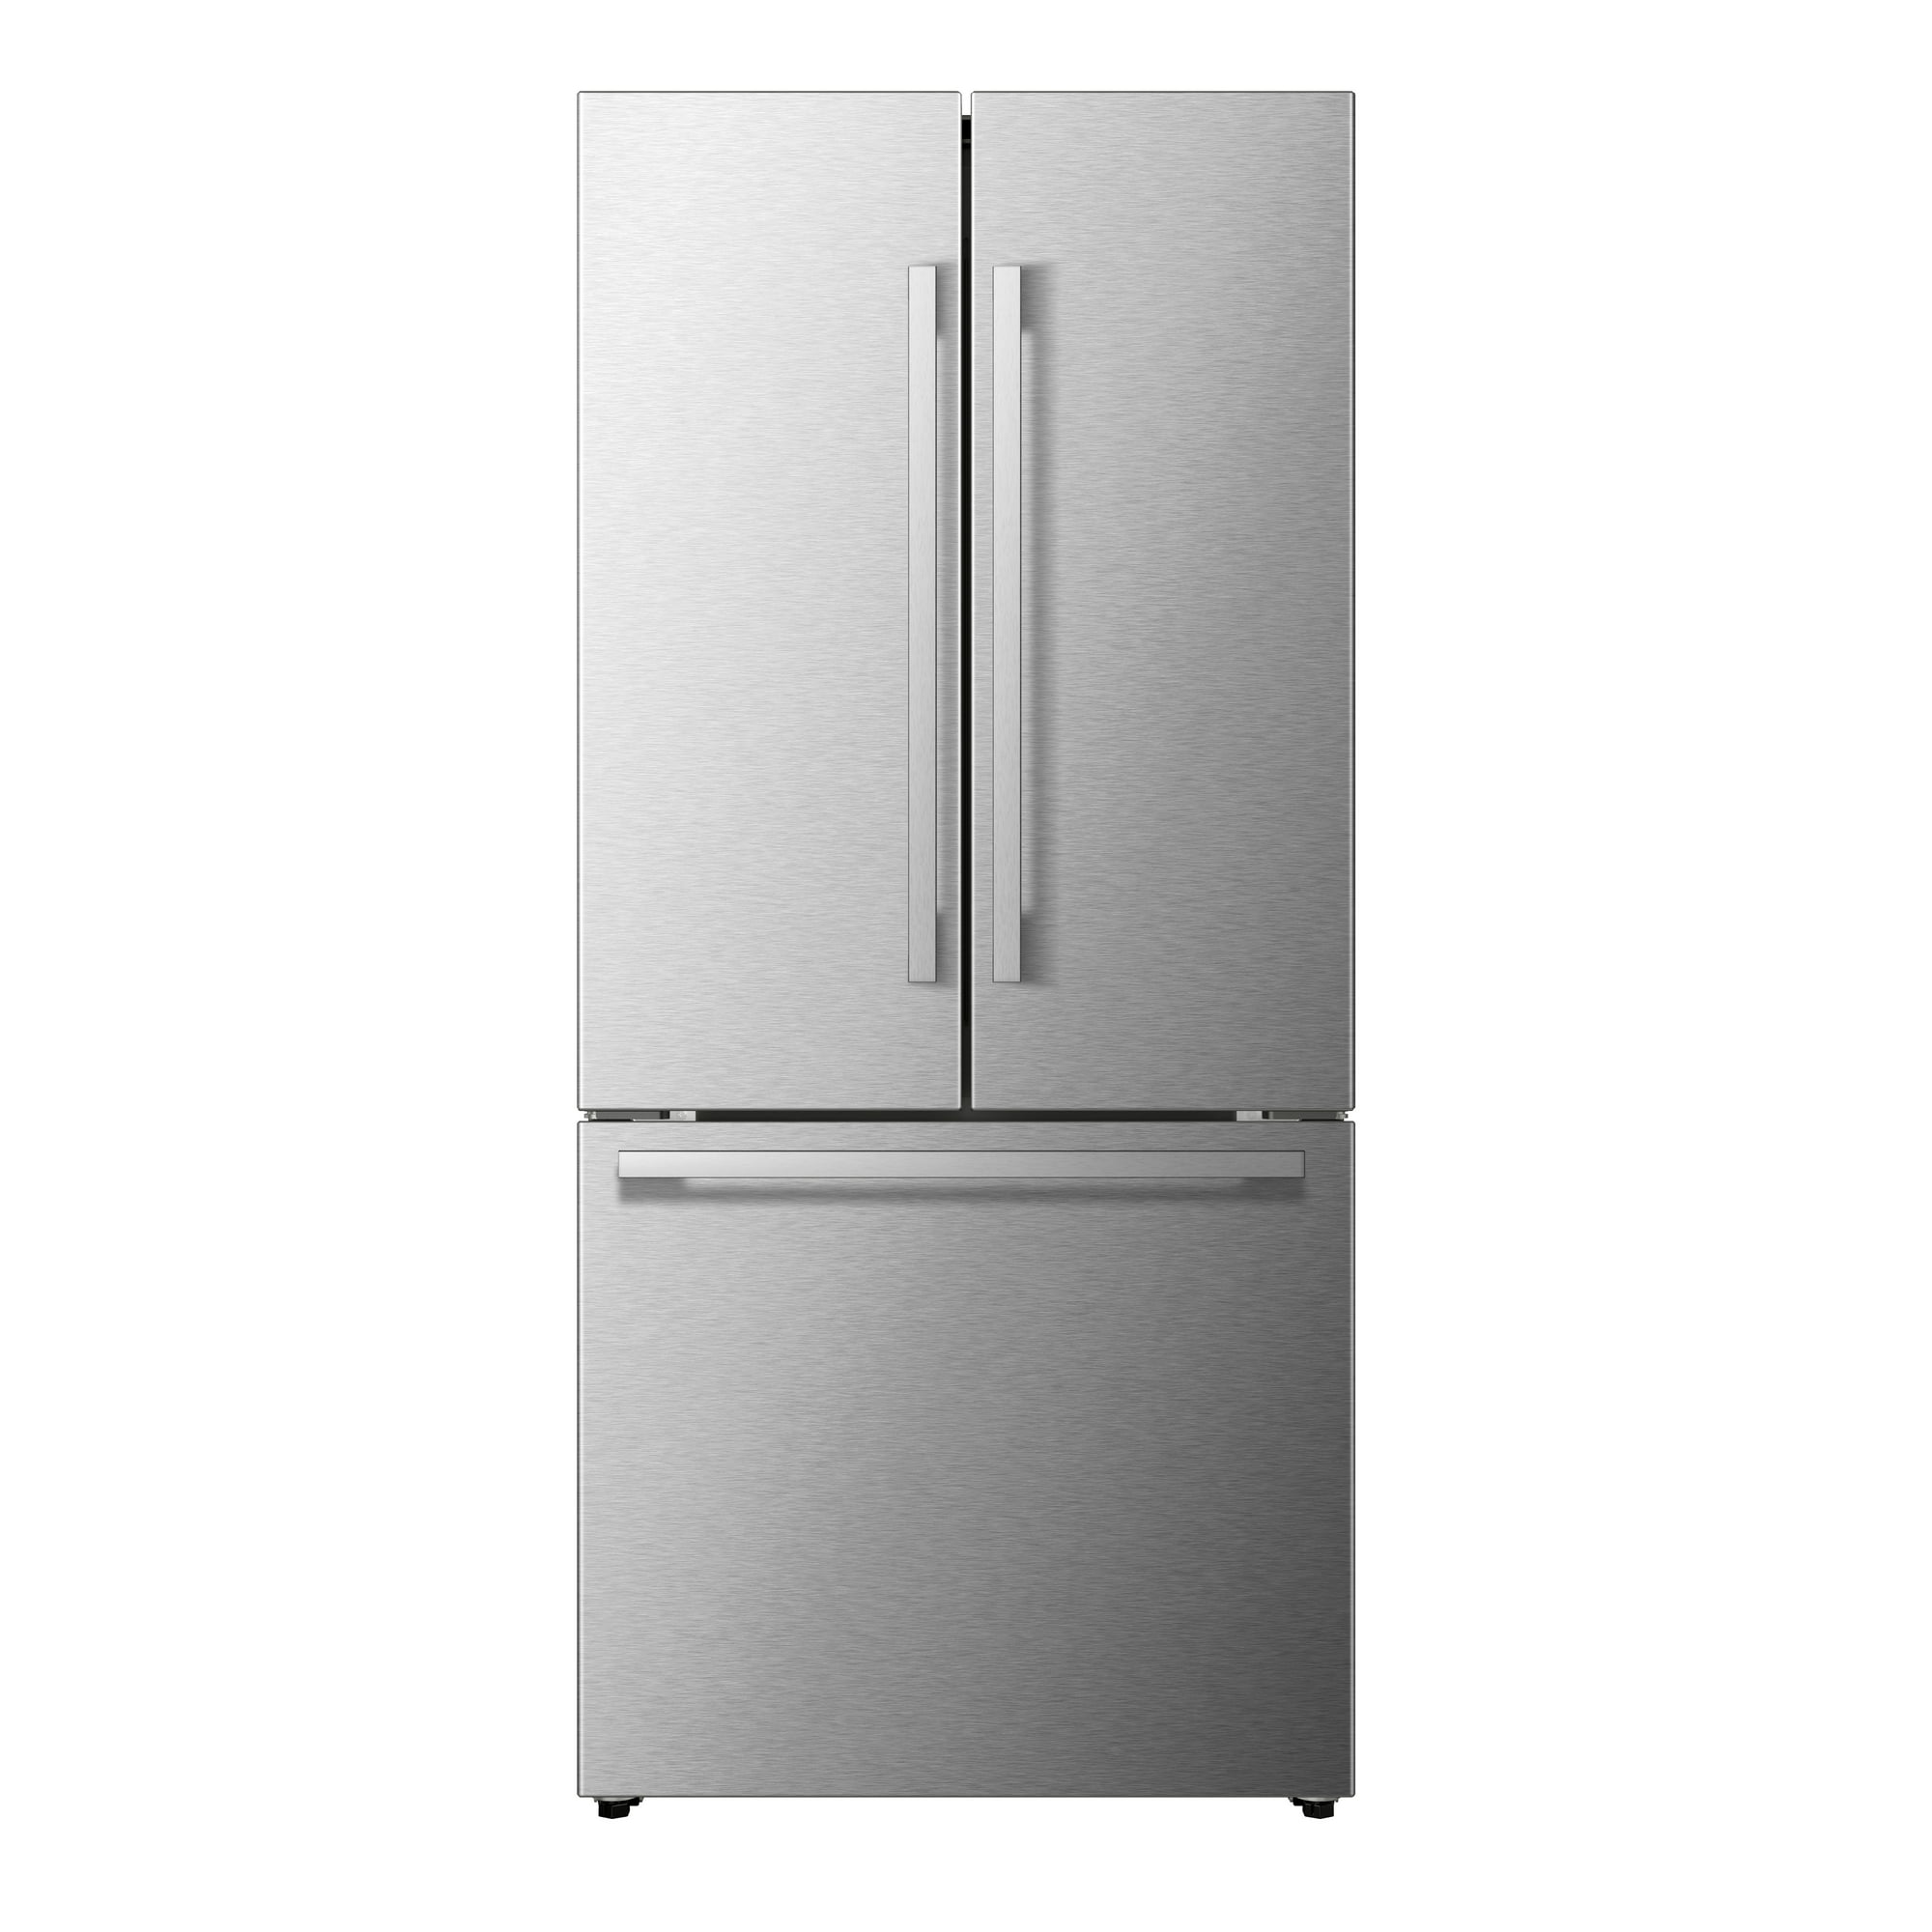 Mora MRF206N6BSE 21 Cu ft French Door Refrigerator